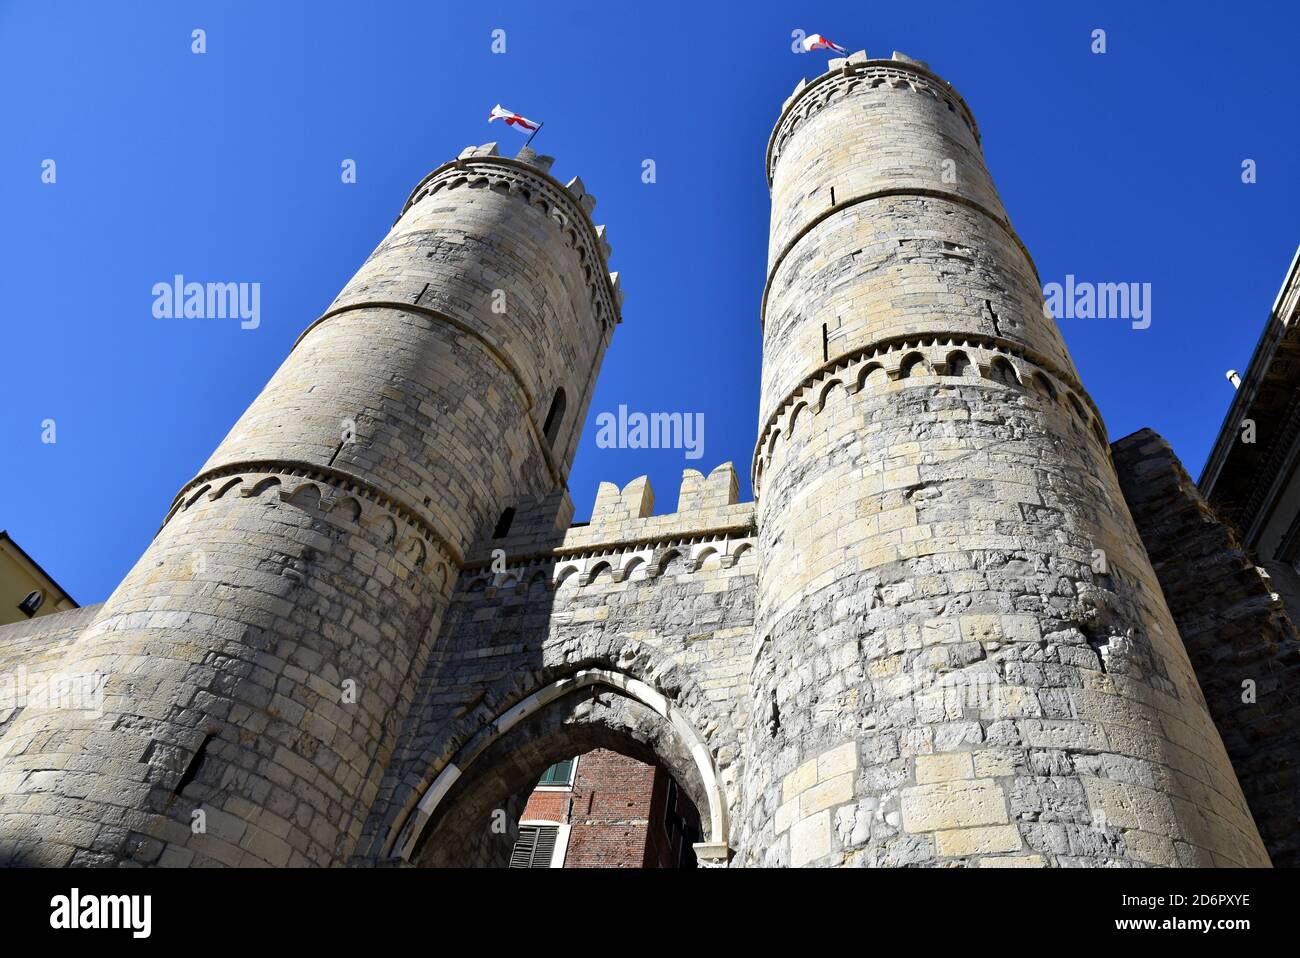 Italia, Génova, la puerta de Soprana con sus dos torres es un testimonio de la arquitectura medieval, era una entrada de la ciudad en las fortificaciones. Foto de stock